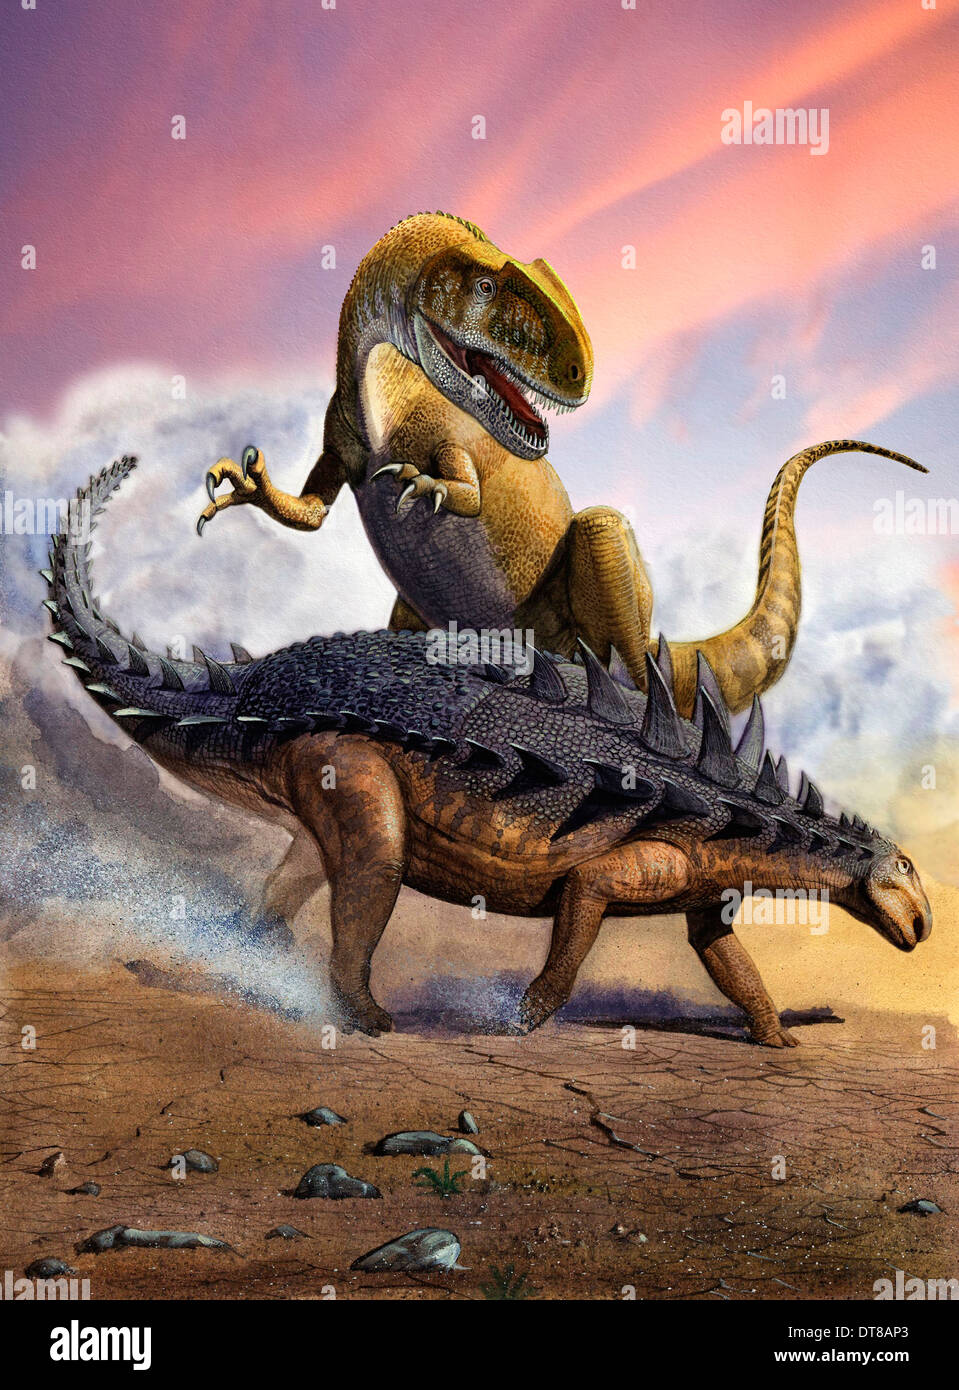 Confronation tra un allosaurid Neovenator ed un Polacanthus dinosauro corazzato durante l'inizio del periodo Cretaceo. Foto Stock